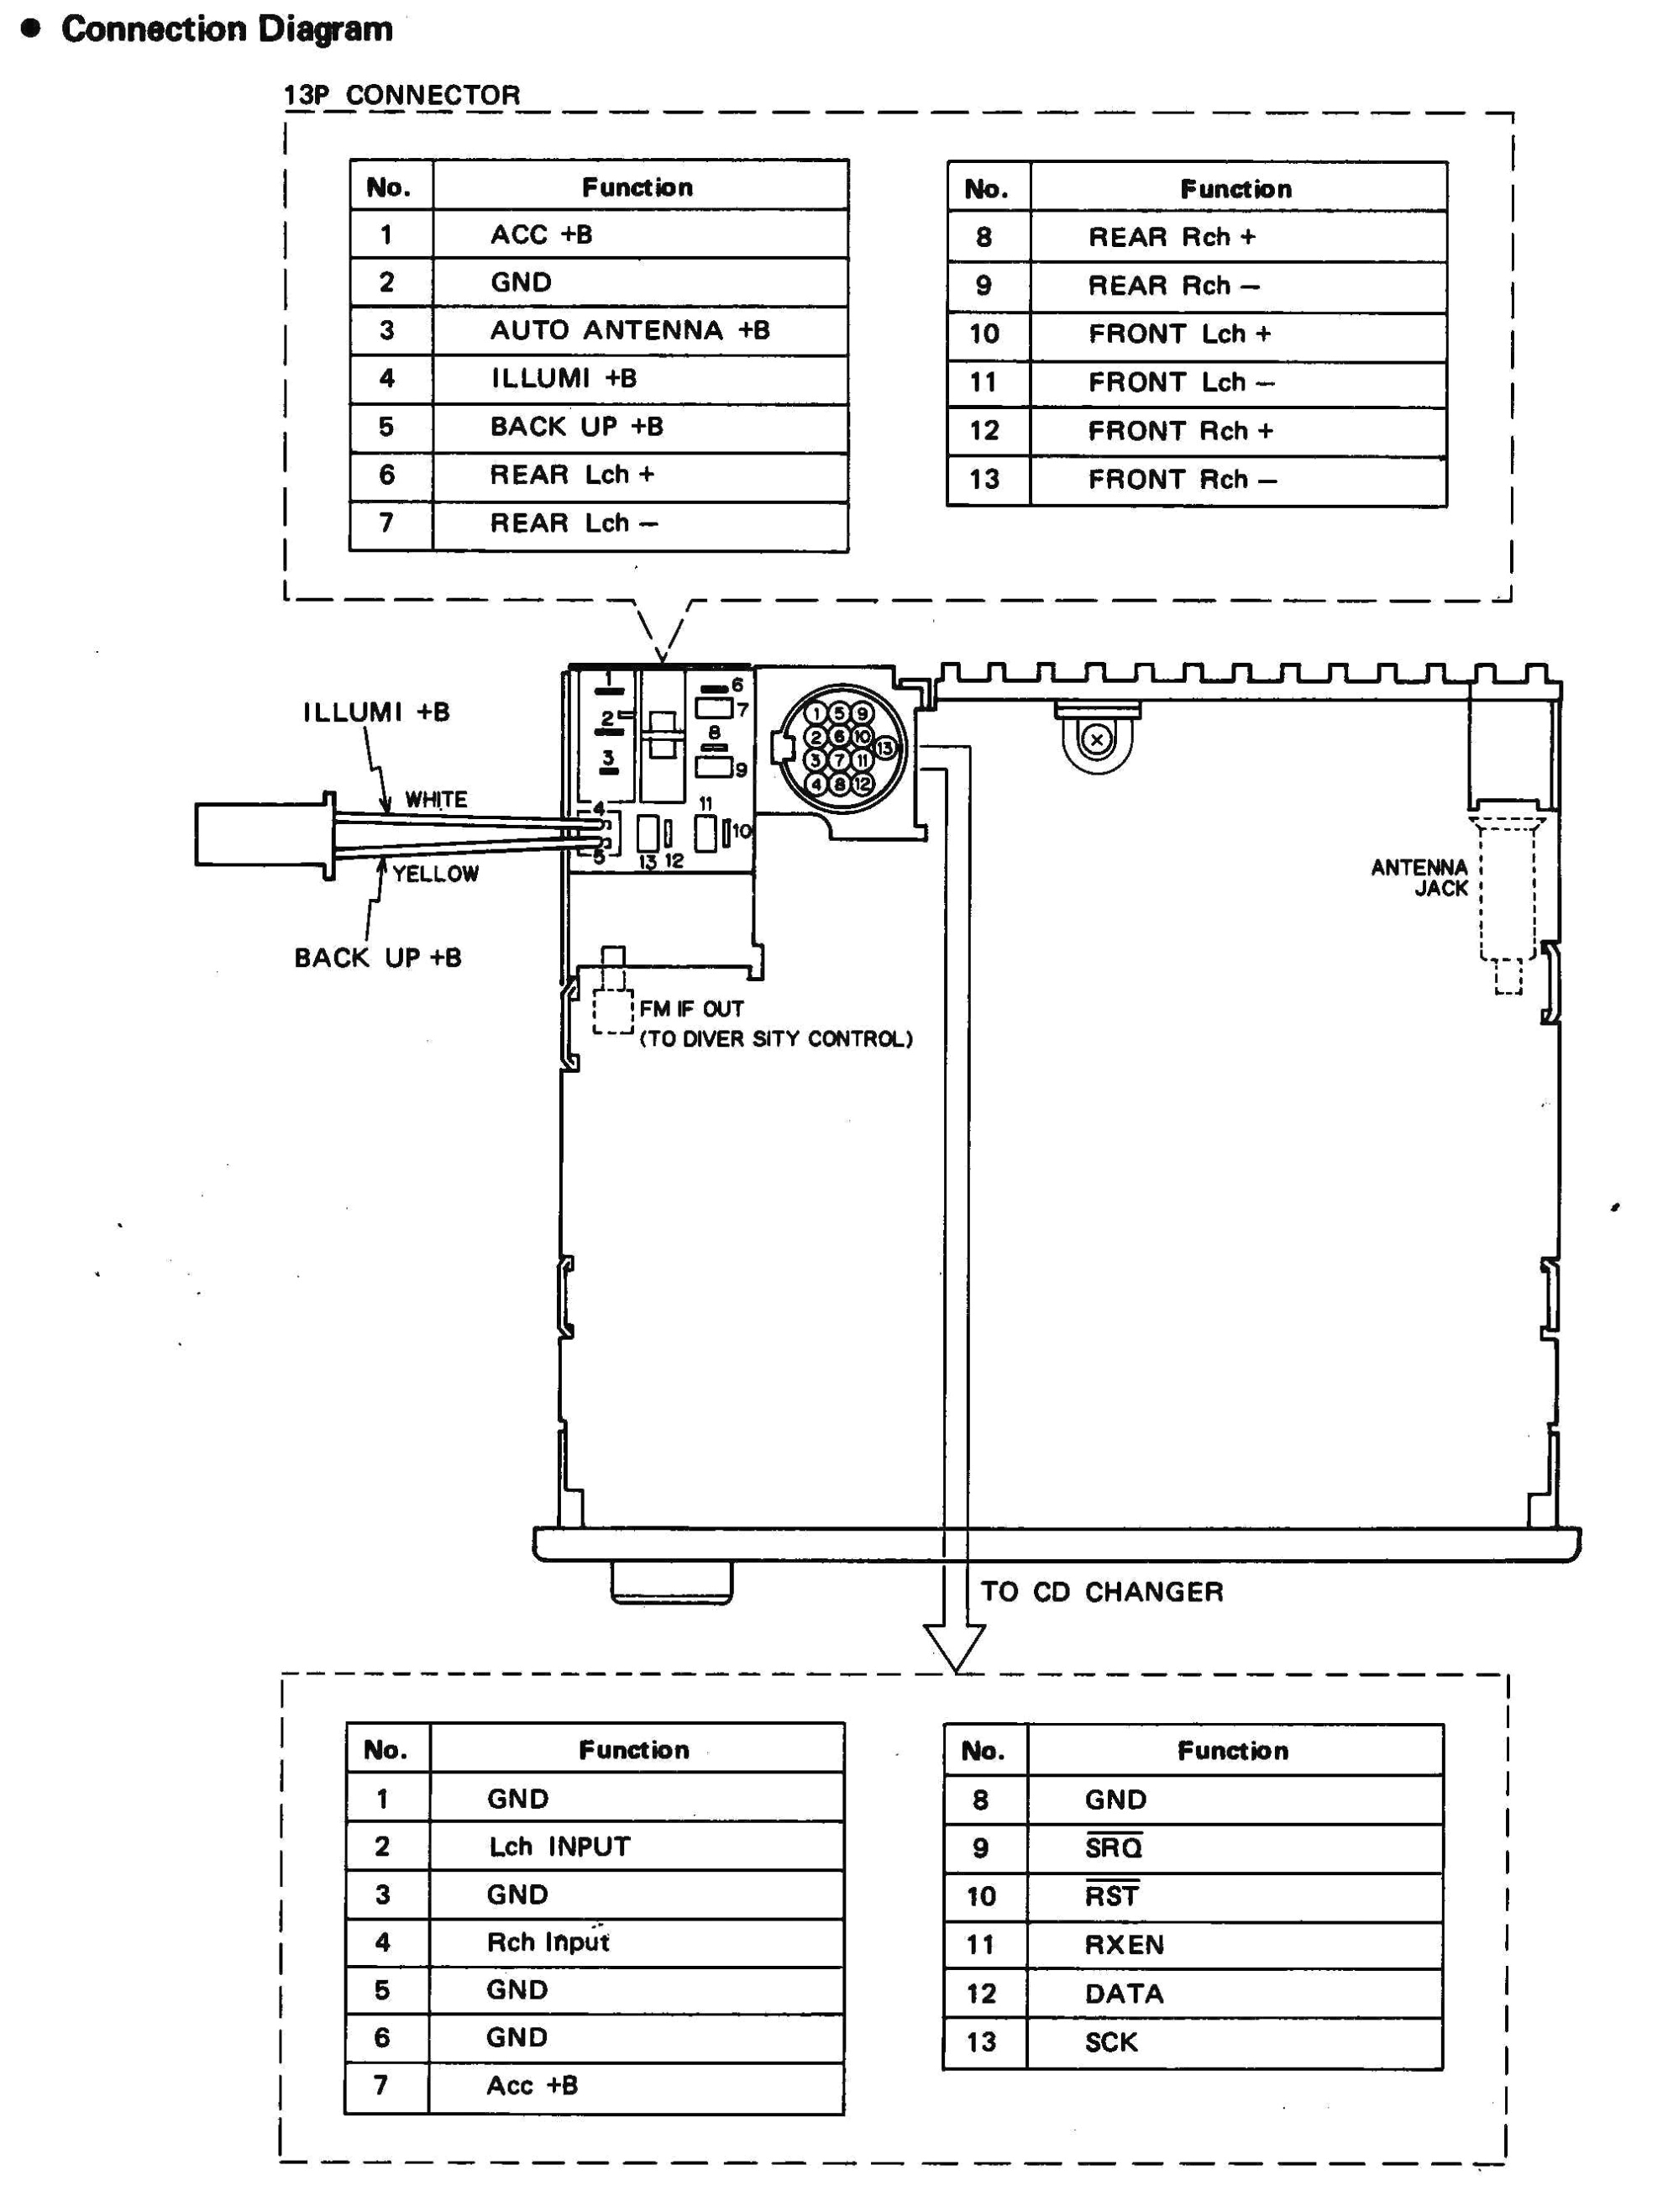 sony 52wx4 wiring diagram wiring diagram usedwire diagram sony wiring diagram paper sony 52wx4 wiring diagram